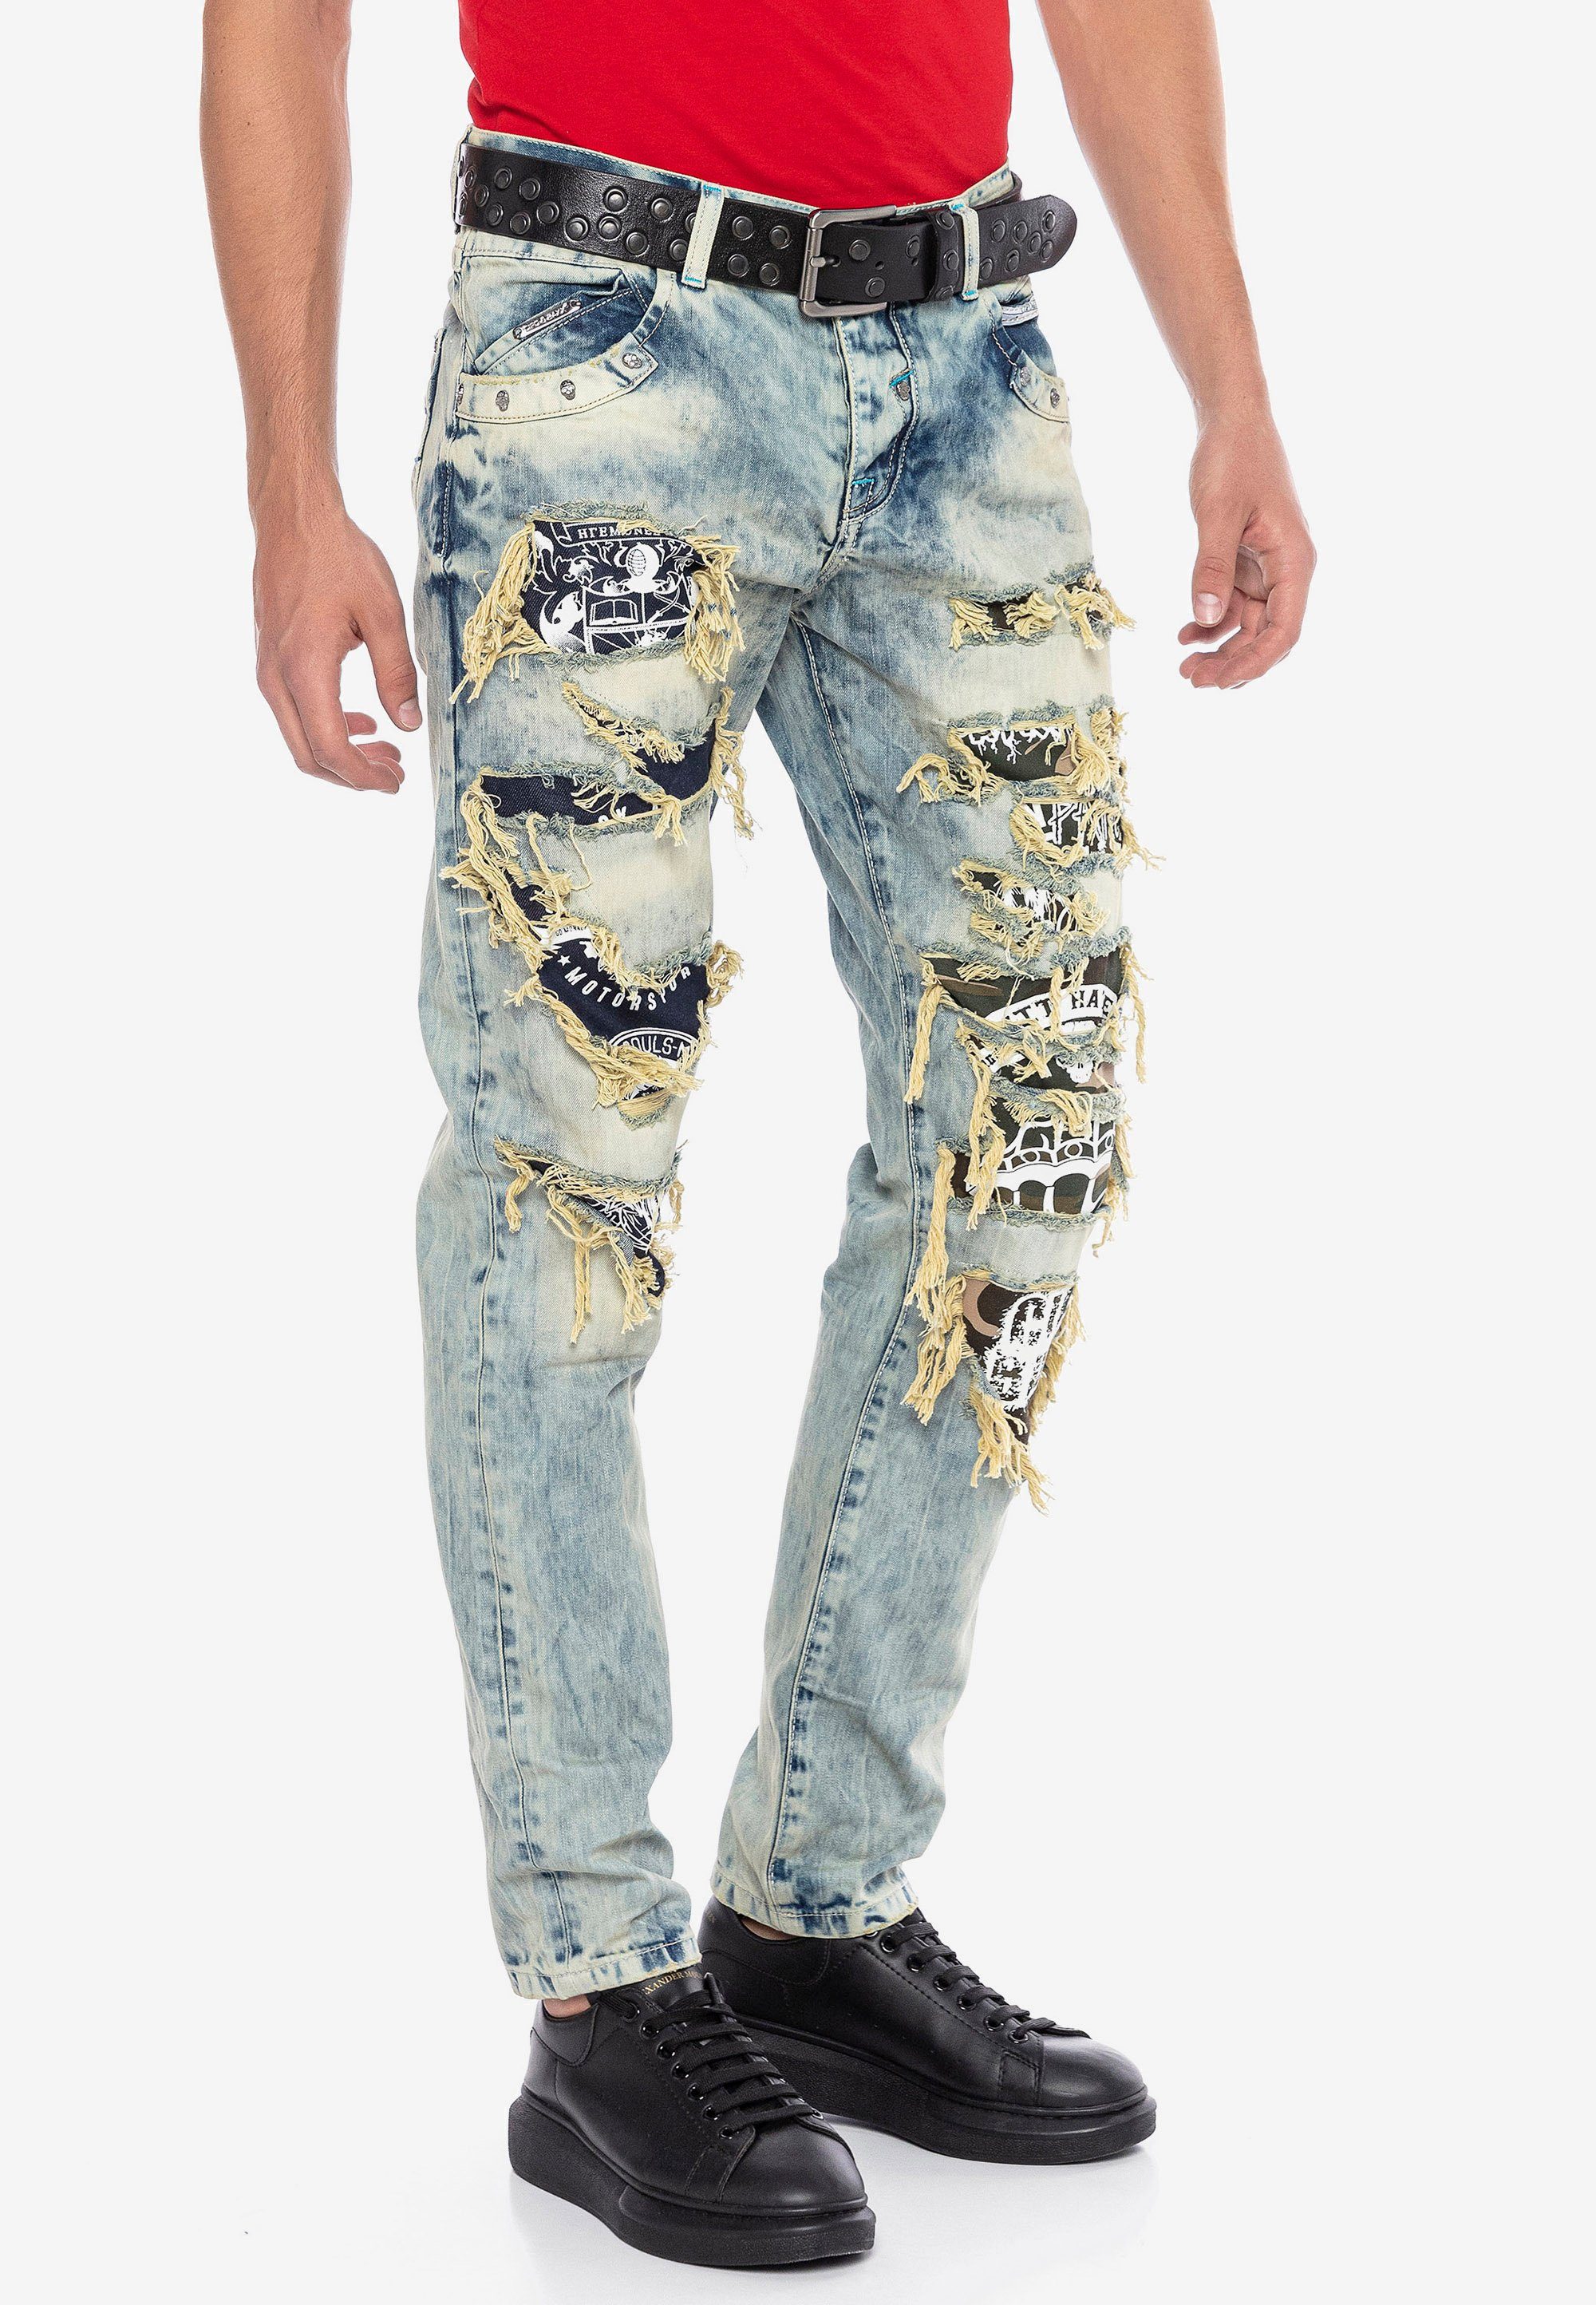 Cipo & Baxx Bequeme Jeans Destroyed-Elementen mit